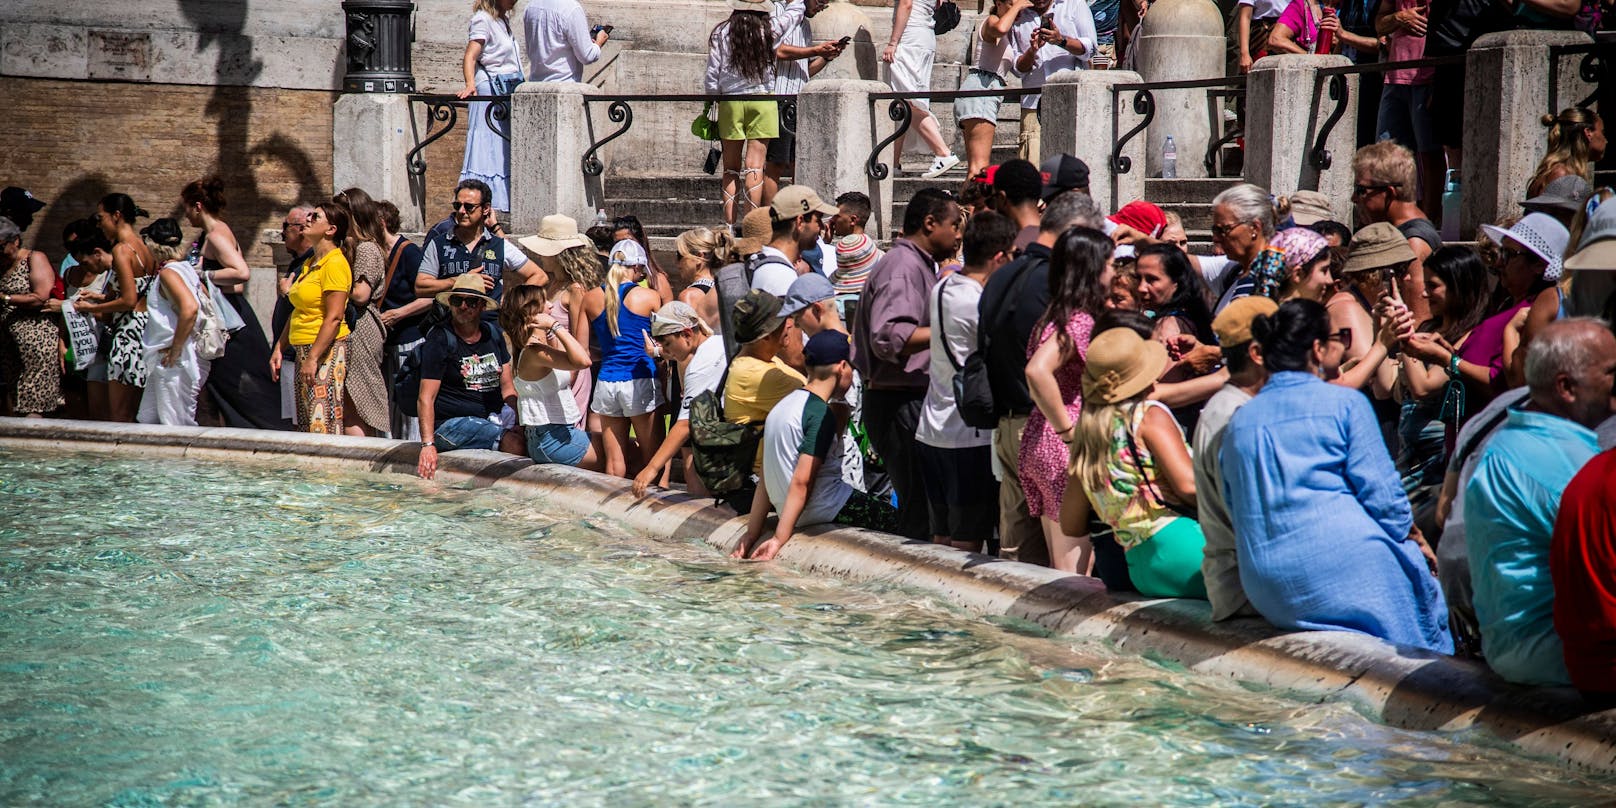 In Rom wird über einen geregelten Zugang zum Trevi-Brunnen nachgedacht, um Menschenmassen vor der beliebten Sehenswürdigkeit zu vermeiden.&nbsp;